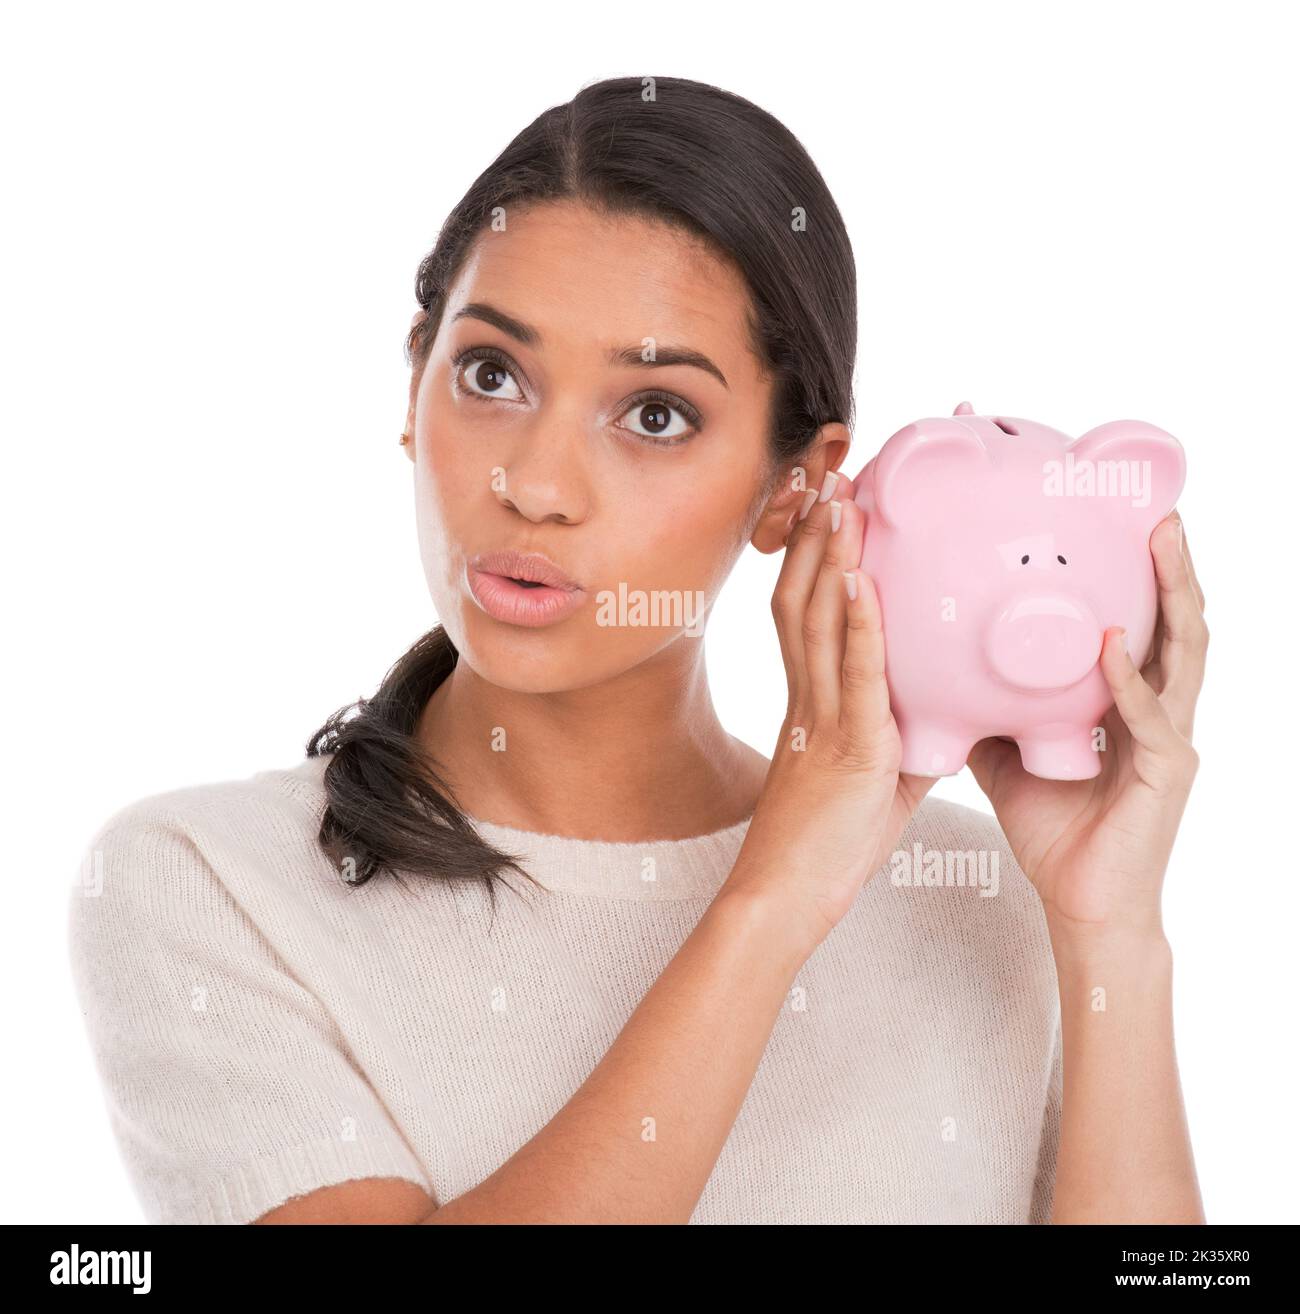 Klingt vielversprechend... eine attraktive junge Frau, die ein Sparschwein hält und hoffnungsvoll aussieht. Stockfoto